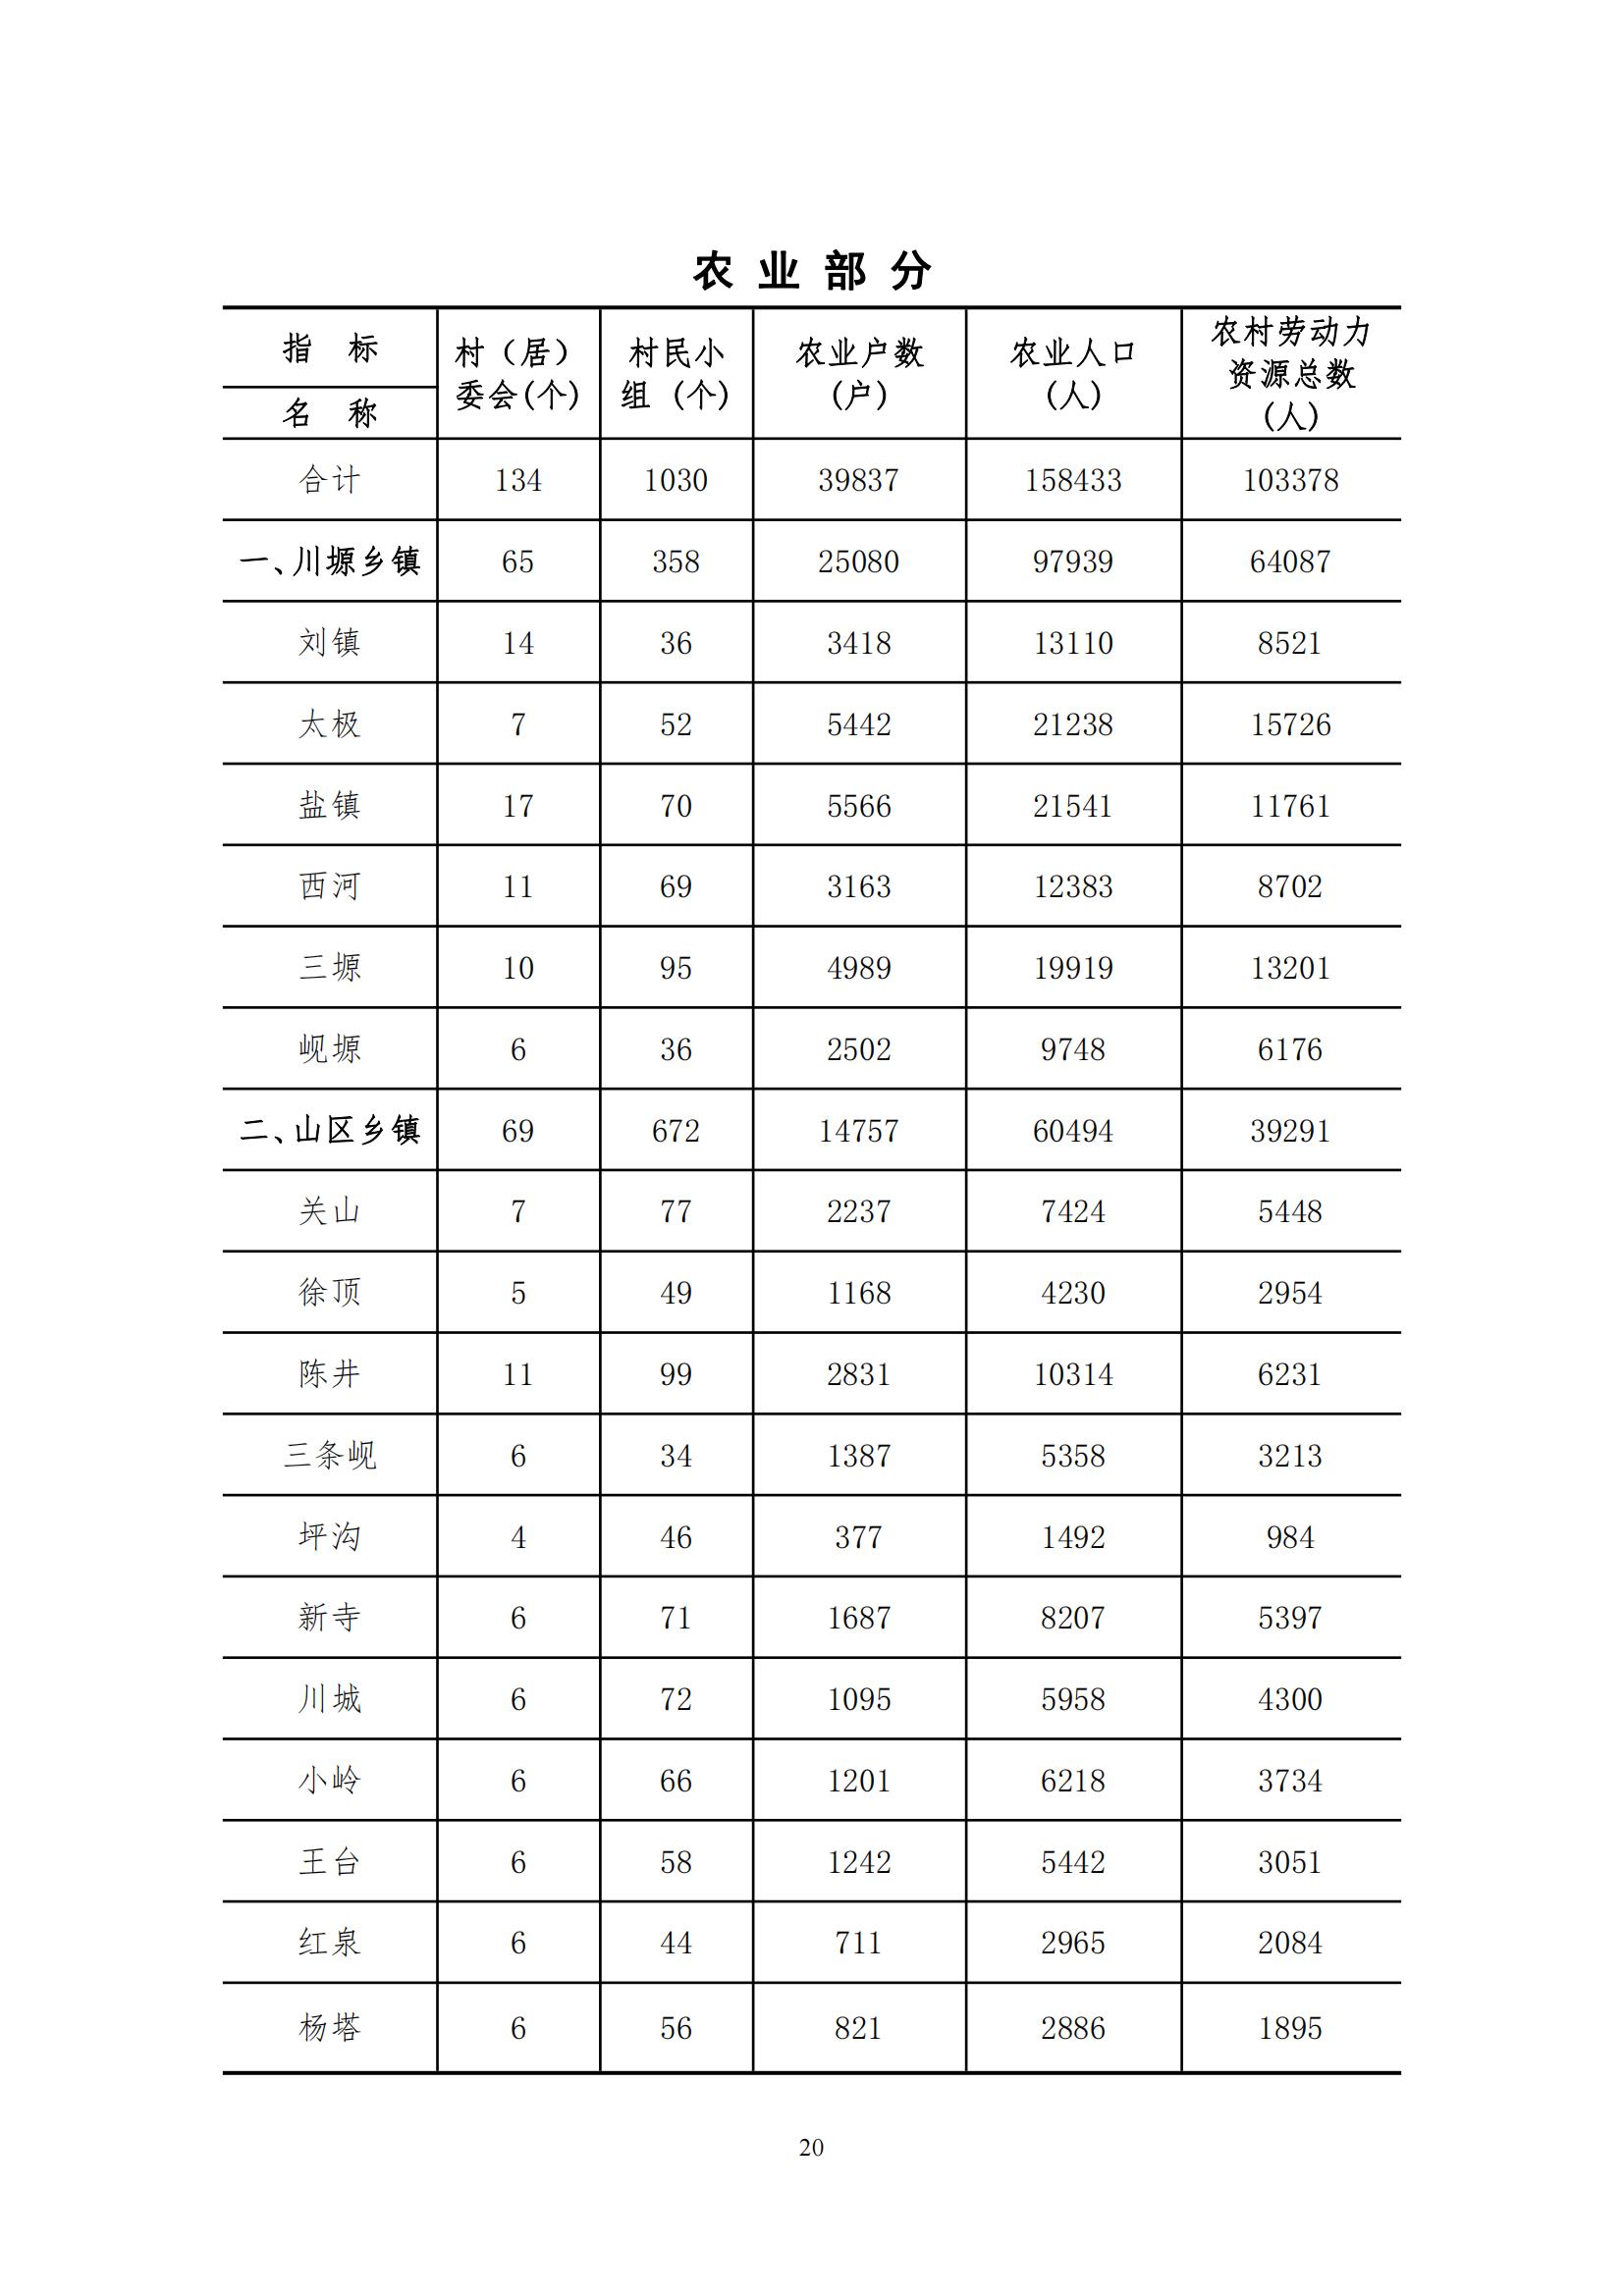 2021年永靖县国民经济和社会发展统计公报_19.jpg